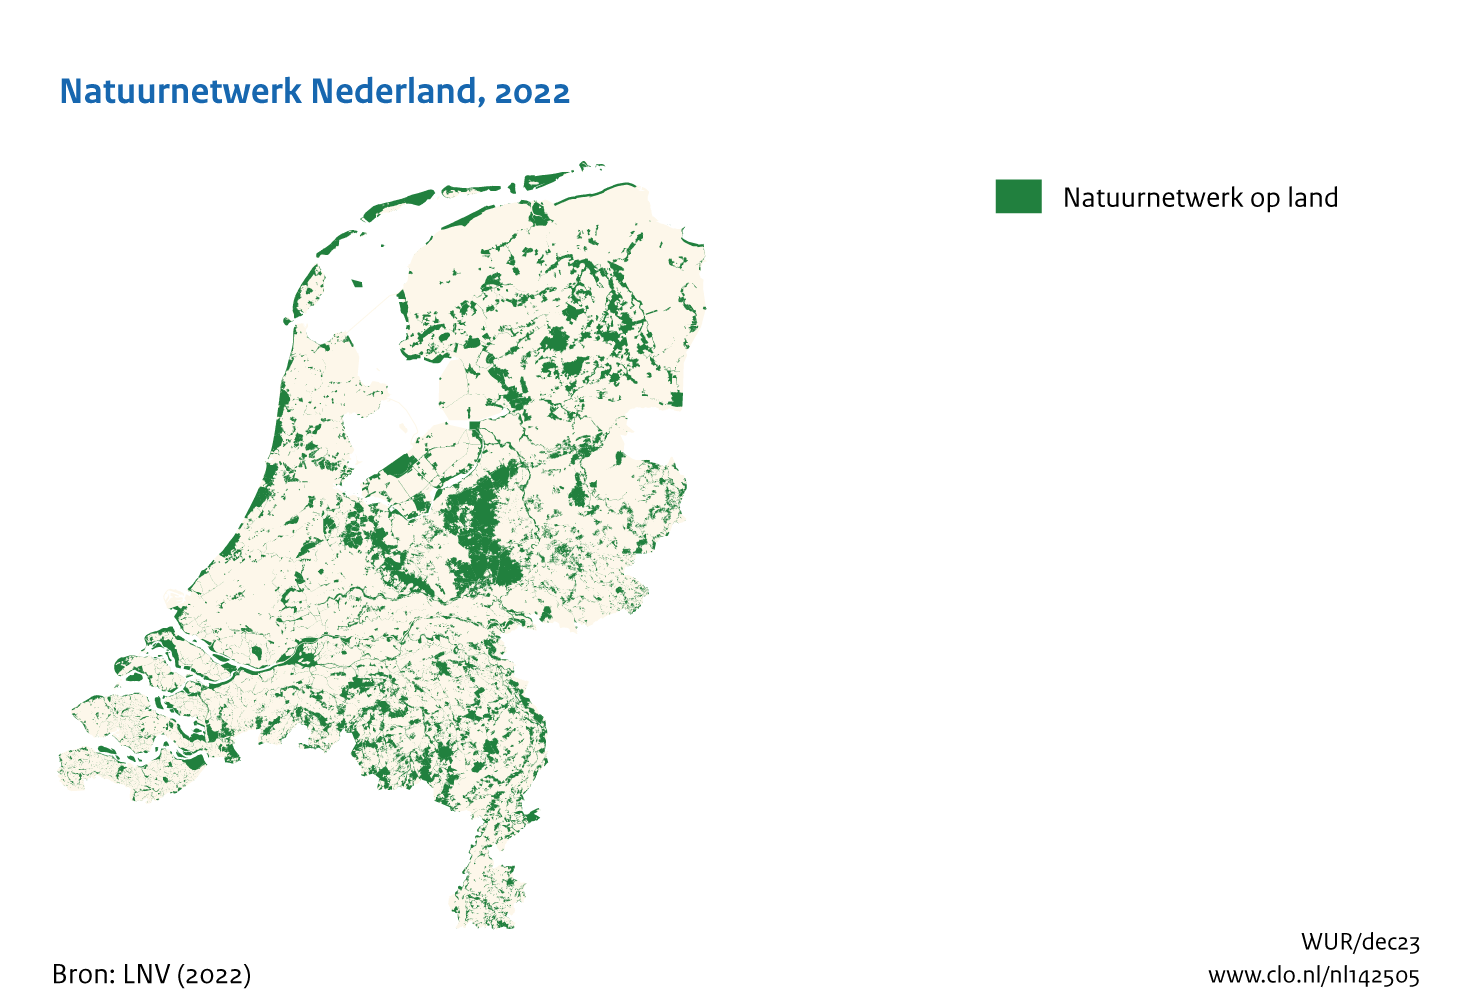 Figuur Natuurnetwerk Nederland 2022. In de rest van de tekst wordt deze figuur uitgebreider uitgelegd.